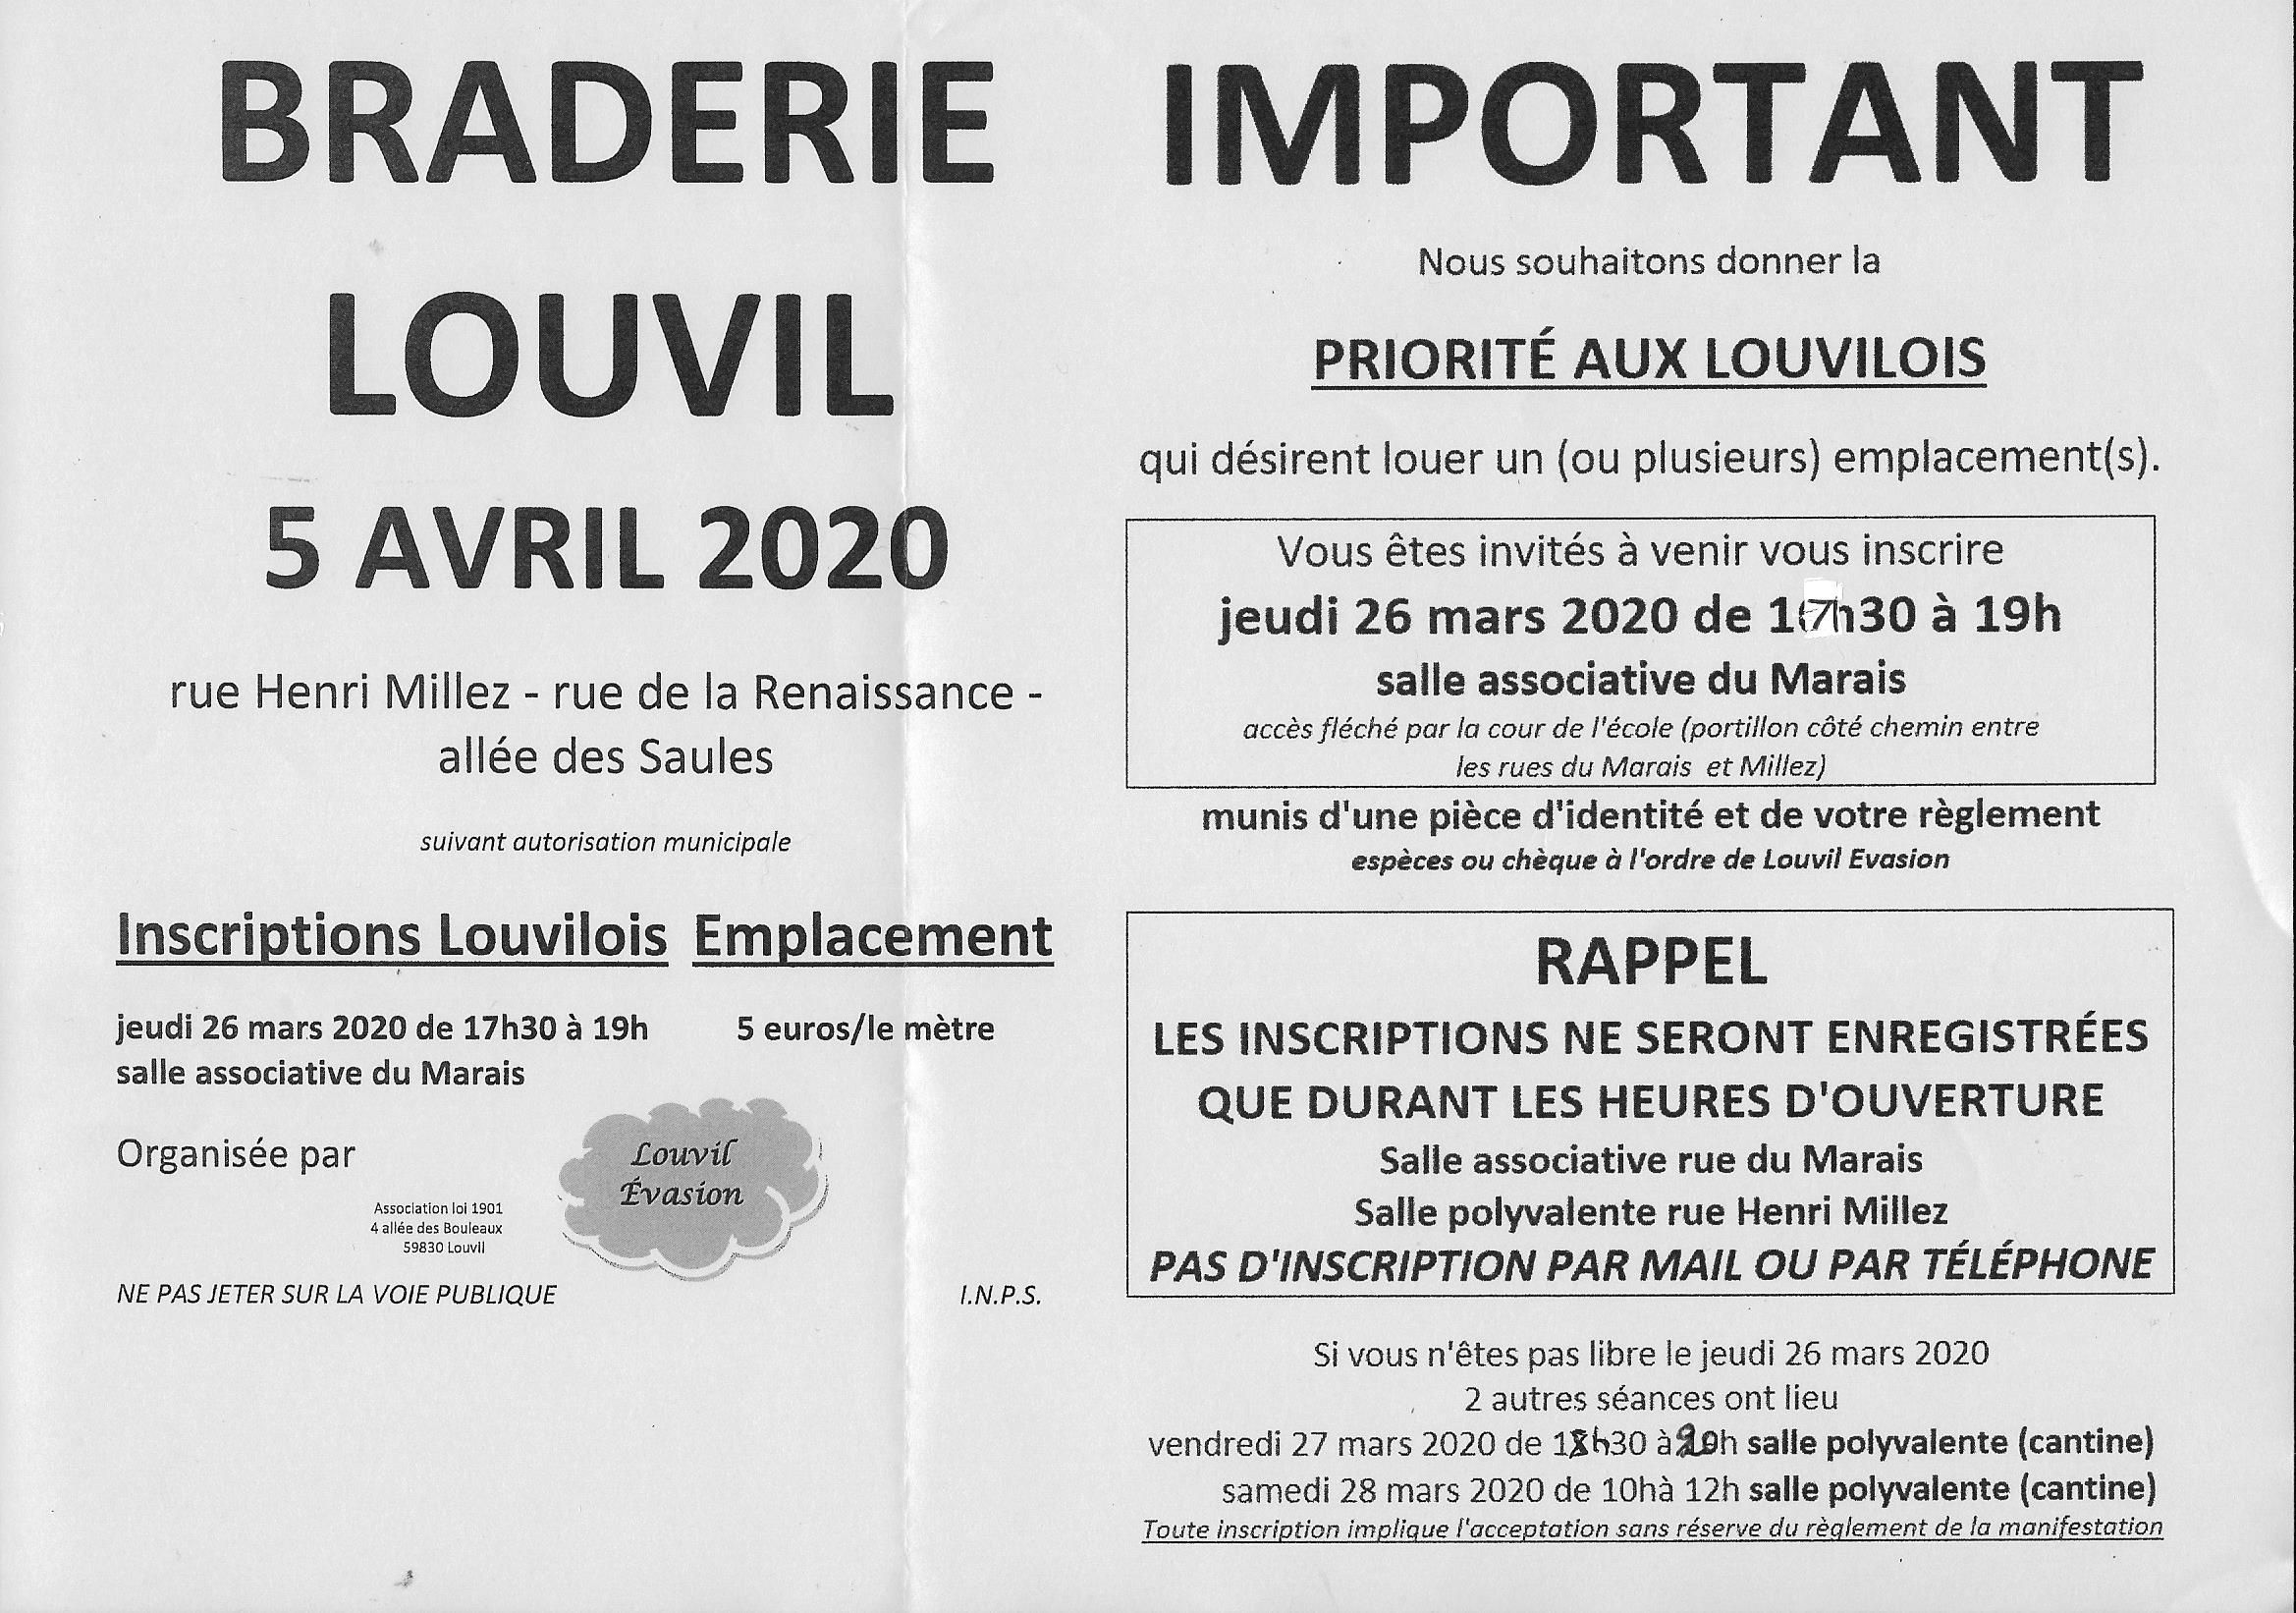 Braderie Louvil 2020